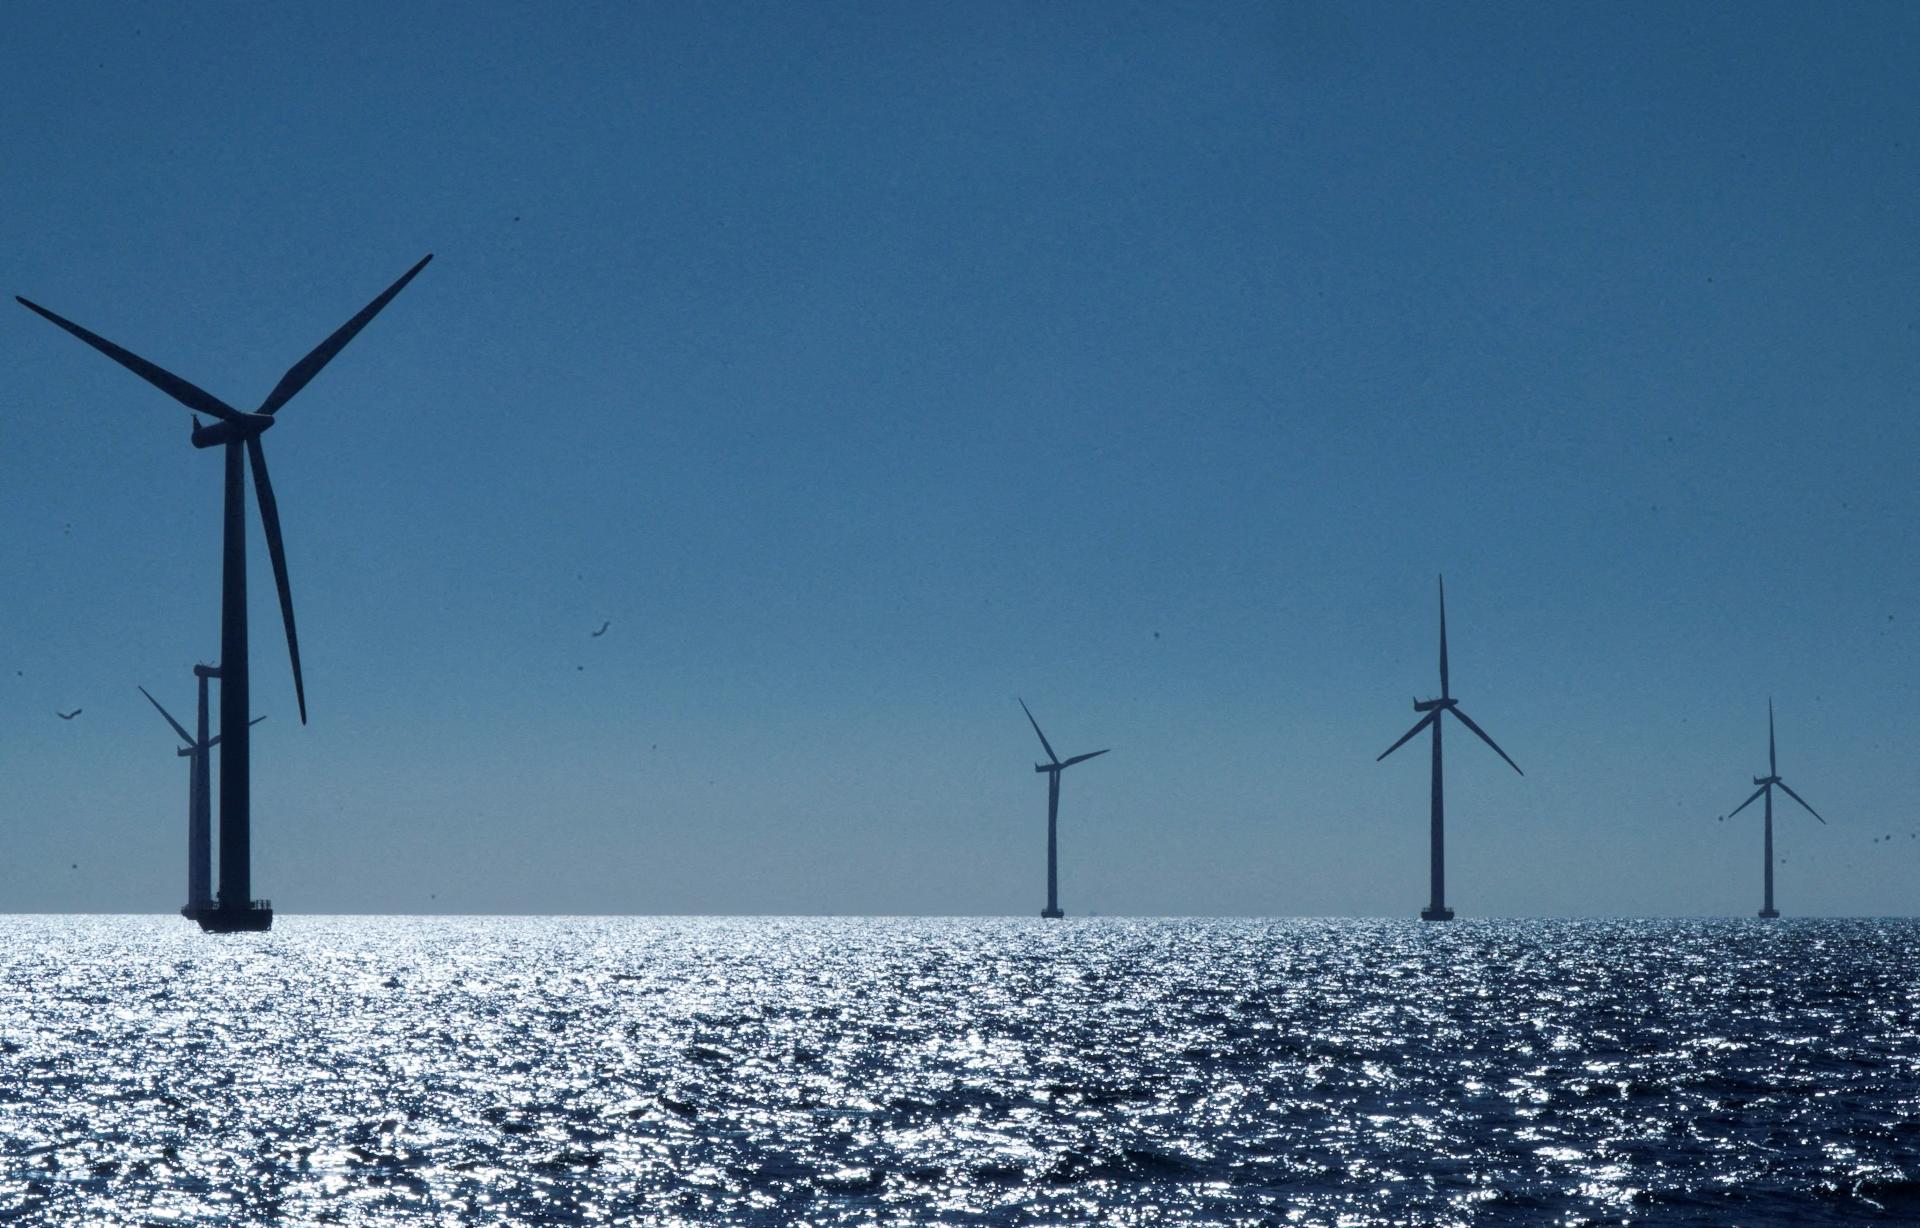 Nemecko vo veľkom rozširuje veterné elektrárne na mori